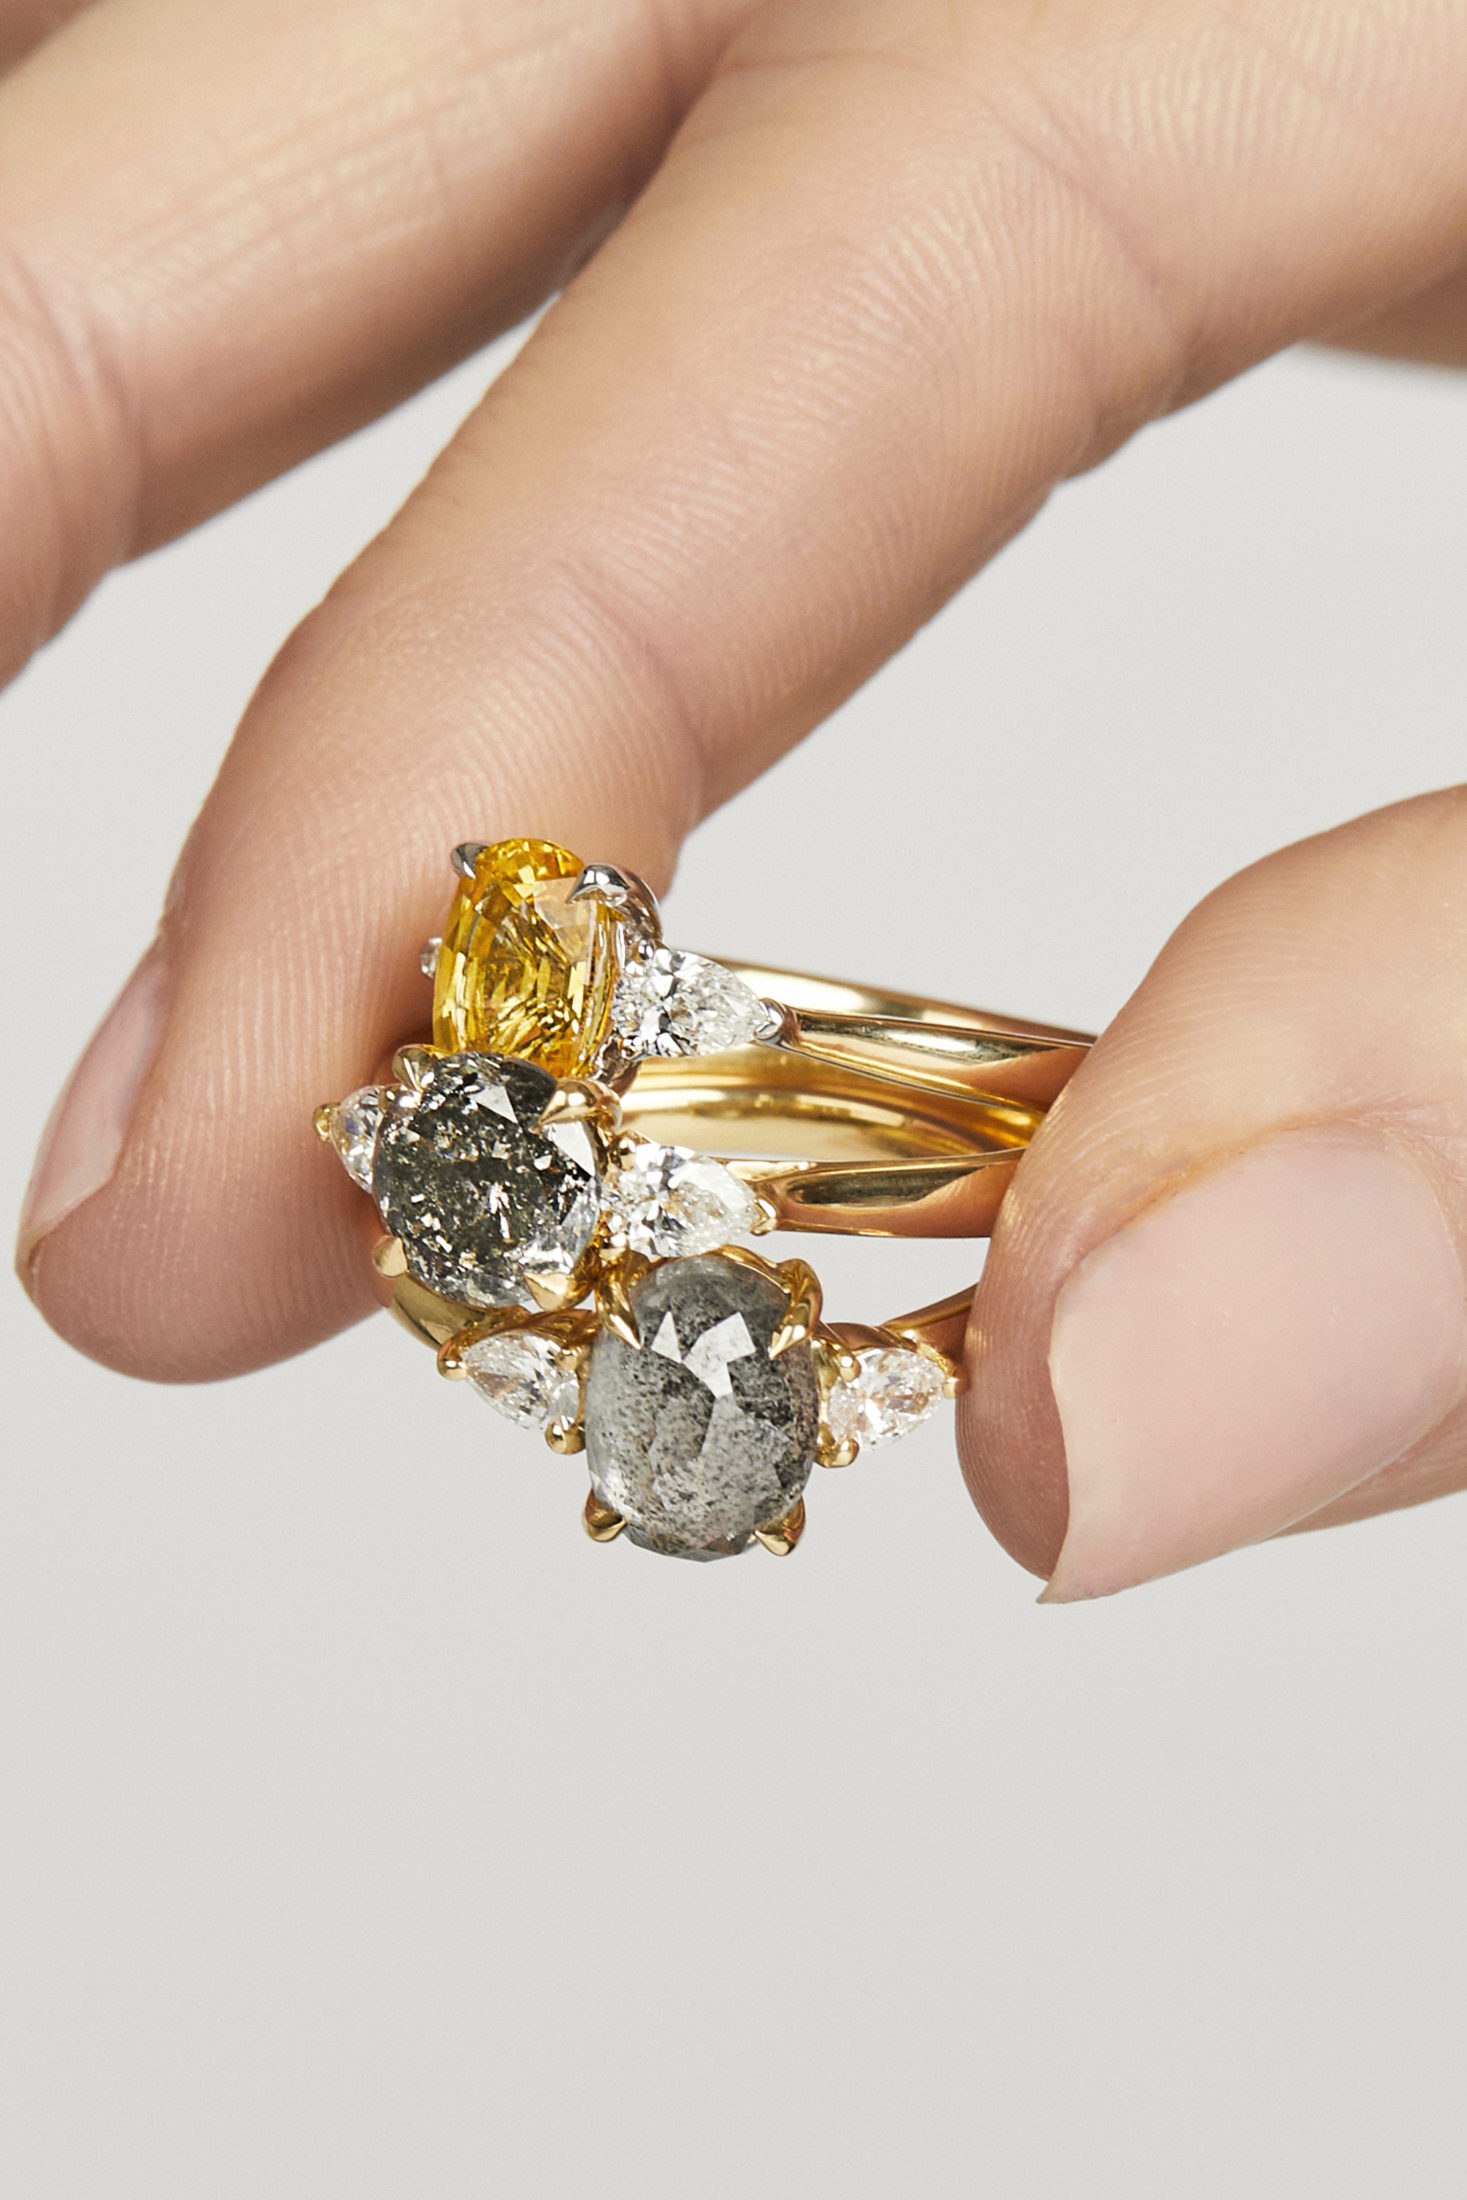 Sophia Perez Jewellery Engagement Rings